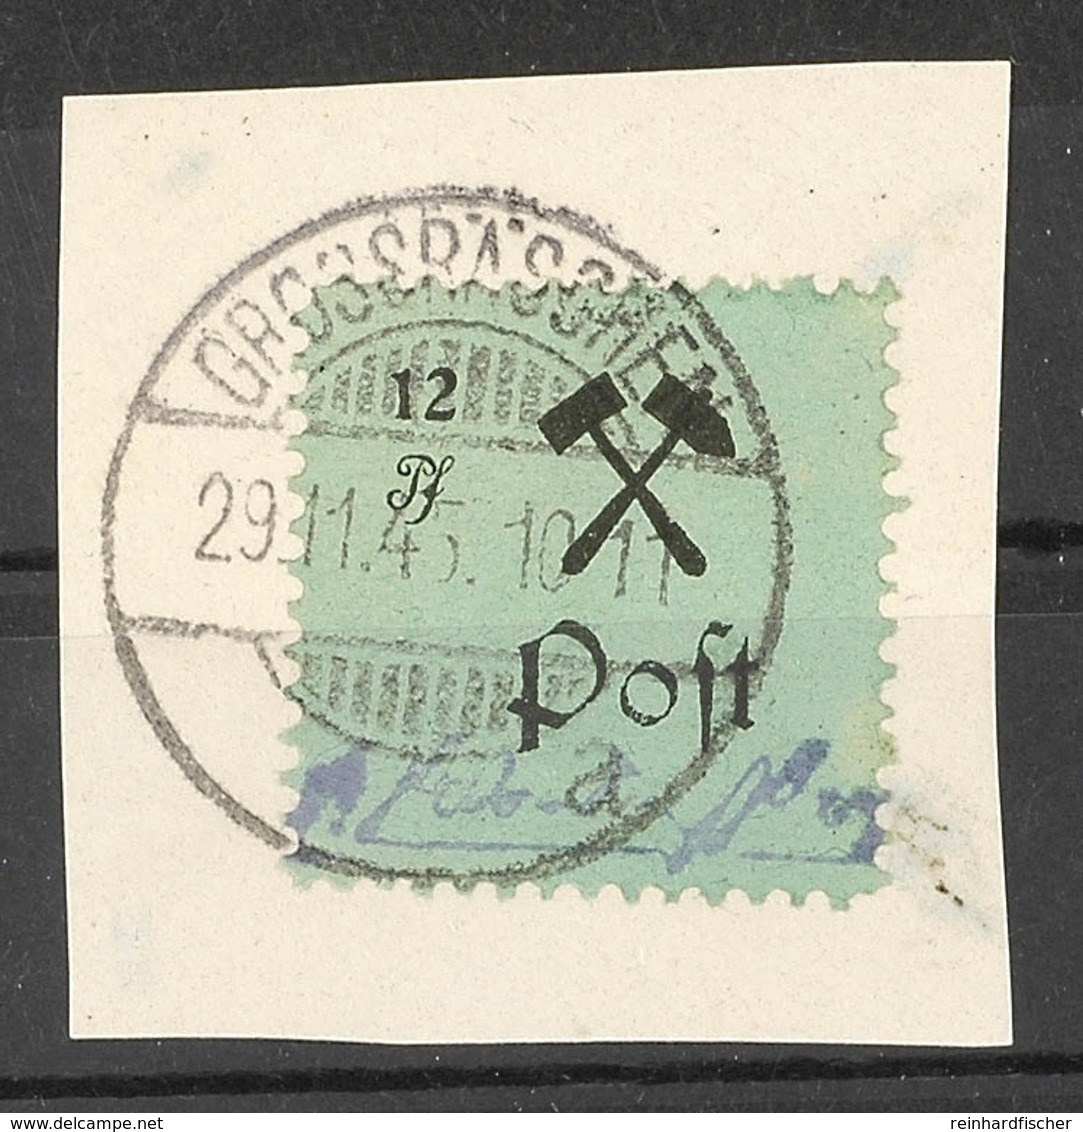 12 Pfg Schwarz Auf Grün, Type I, Auf Kabinett-Briefstück, Geprüft Sturm, Mi. 65,-, Katalog: 25I BS - Grossraeschen